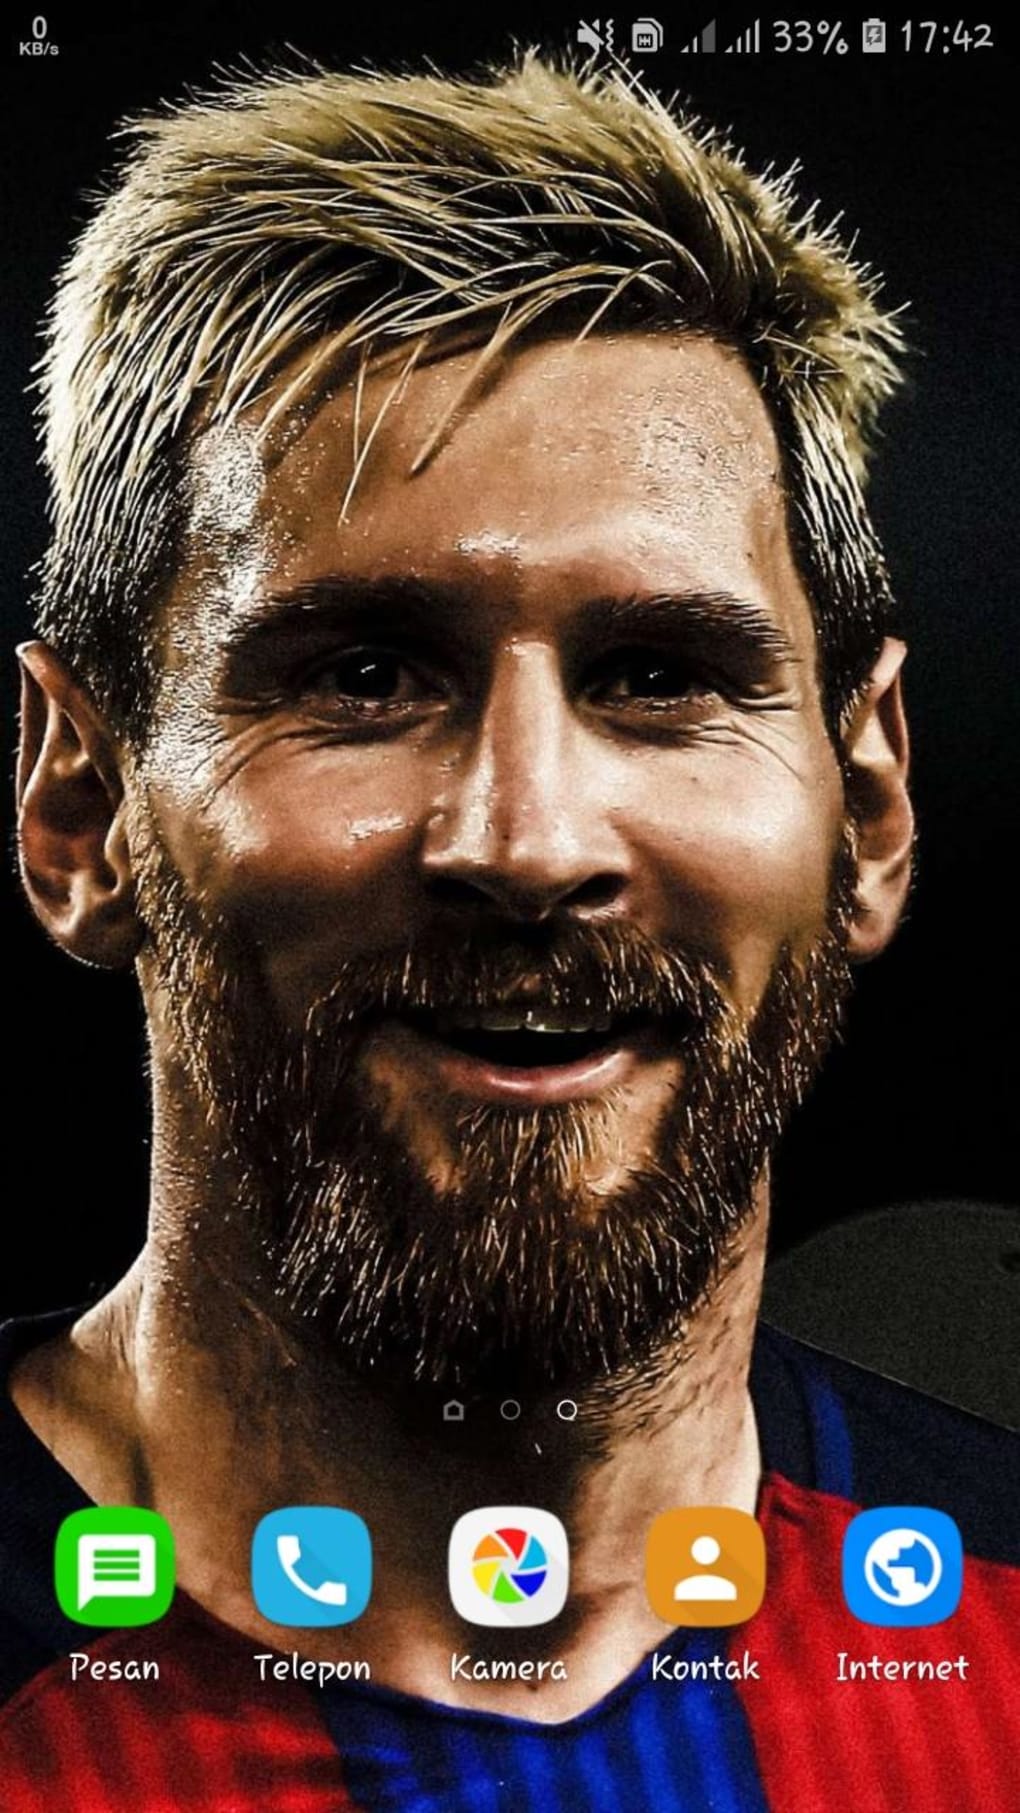 Lionel Messi, Wallpaper HD, 2022, APK, Android: Để chuẩn bị cho mùa giải mới và sự trở lại của Messi, hãy cập nhật ngay những bức ảnh thần thánh nhất về cầu thủ này. Hình nền HD này có thể được tải xuống qua APK hoặc cho các thiết bị Android.